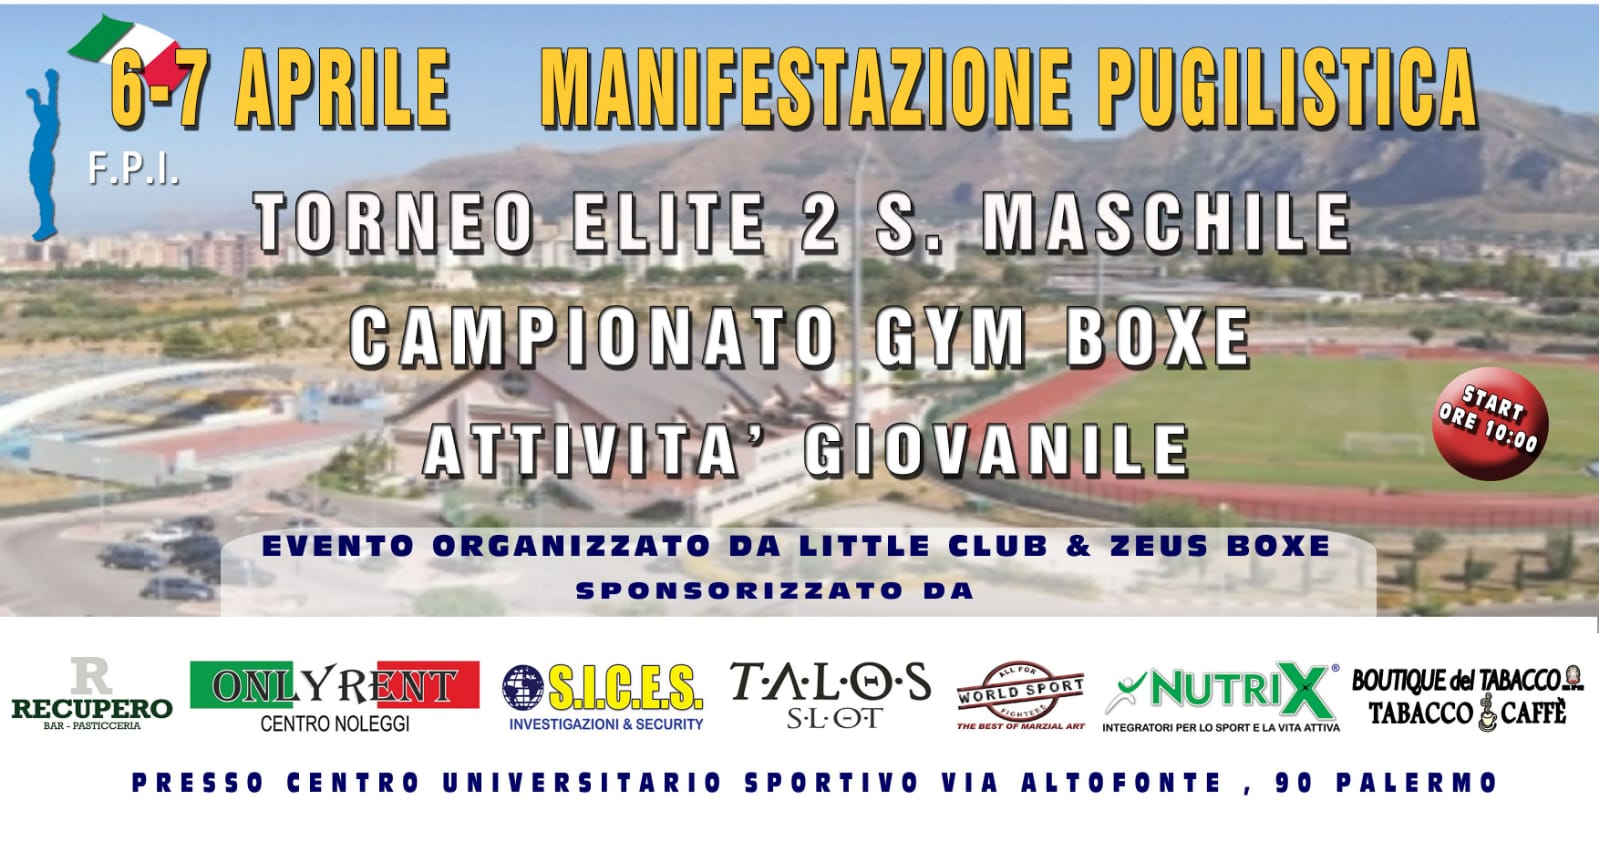 Il 6-7 Aprile a Palermo il Torneo Elite 2° Serie del CR Sicilia e il Campionato Regionale di Gym Boxe 